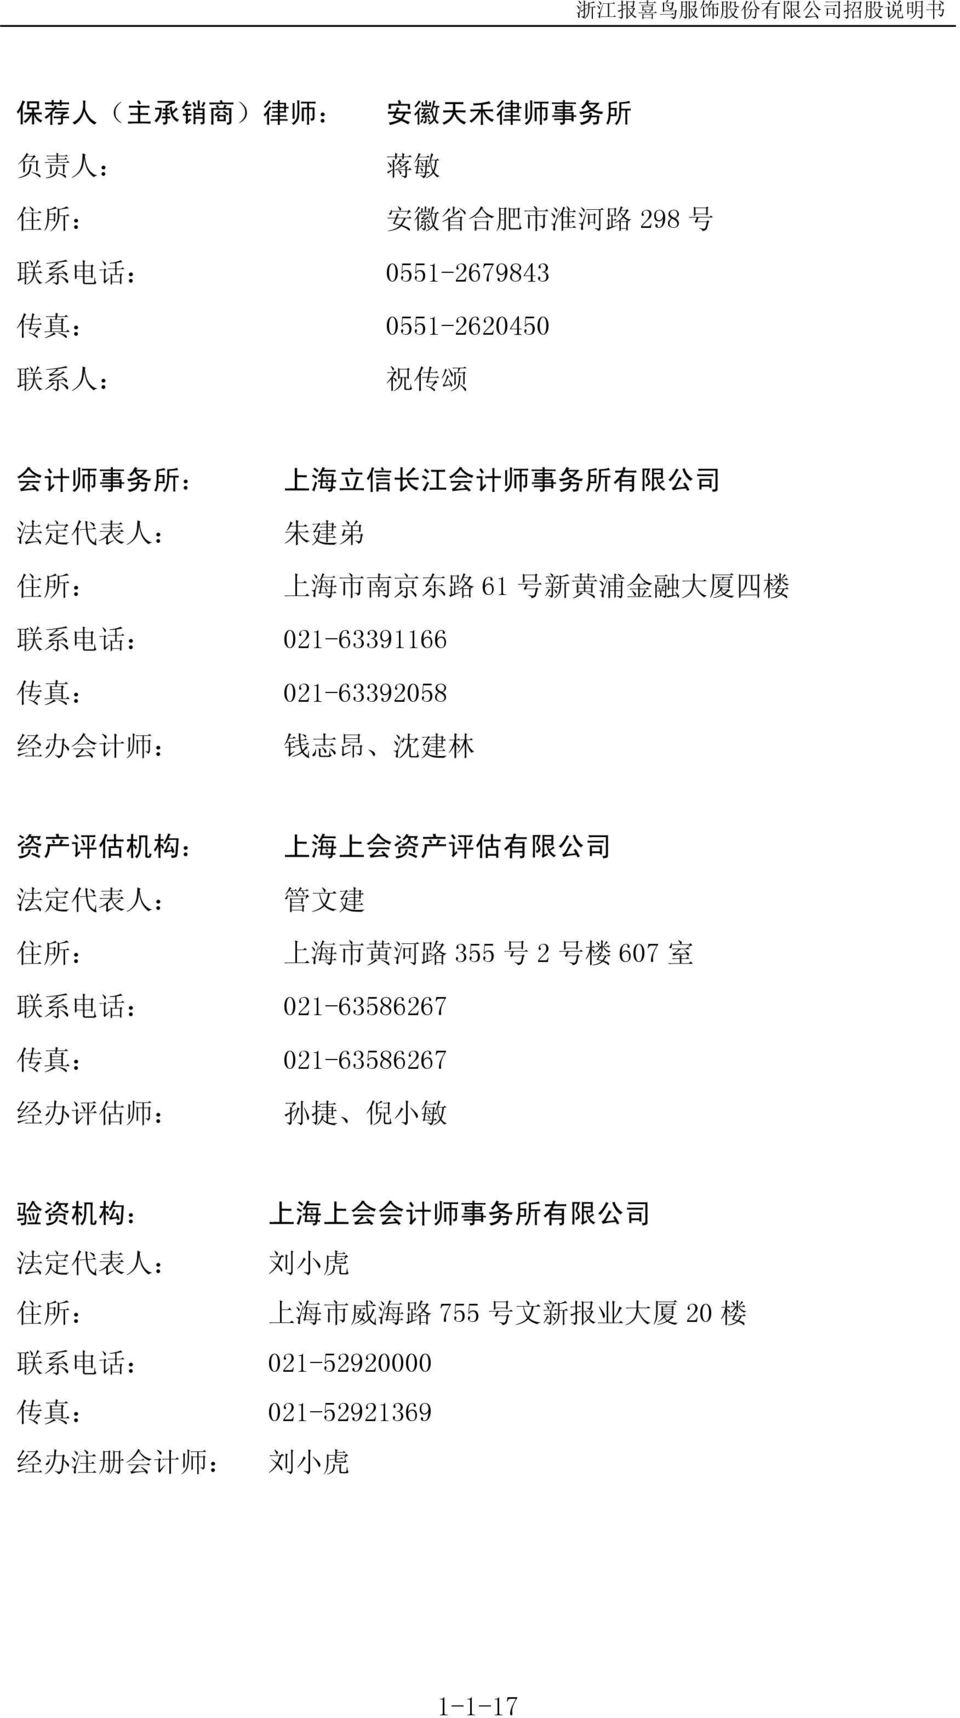 评 估 机 构 : 法 定 代 表 人 : 住 所 : 上 海 上 会 资 产 评 估 有 限 公 司 管 文 建 上 海 市 黄 河 路 355 号 2 号 楼 607 室 联 系 电 话 : 021-63586267 传 真 : 021-63586267 经 办 评 估 师 : 孙 捷 倪 小 敏 验 资 机